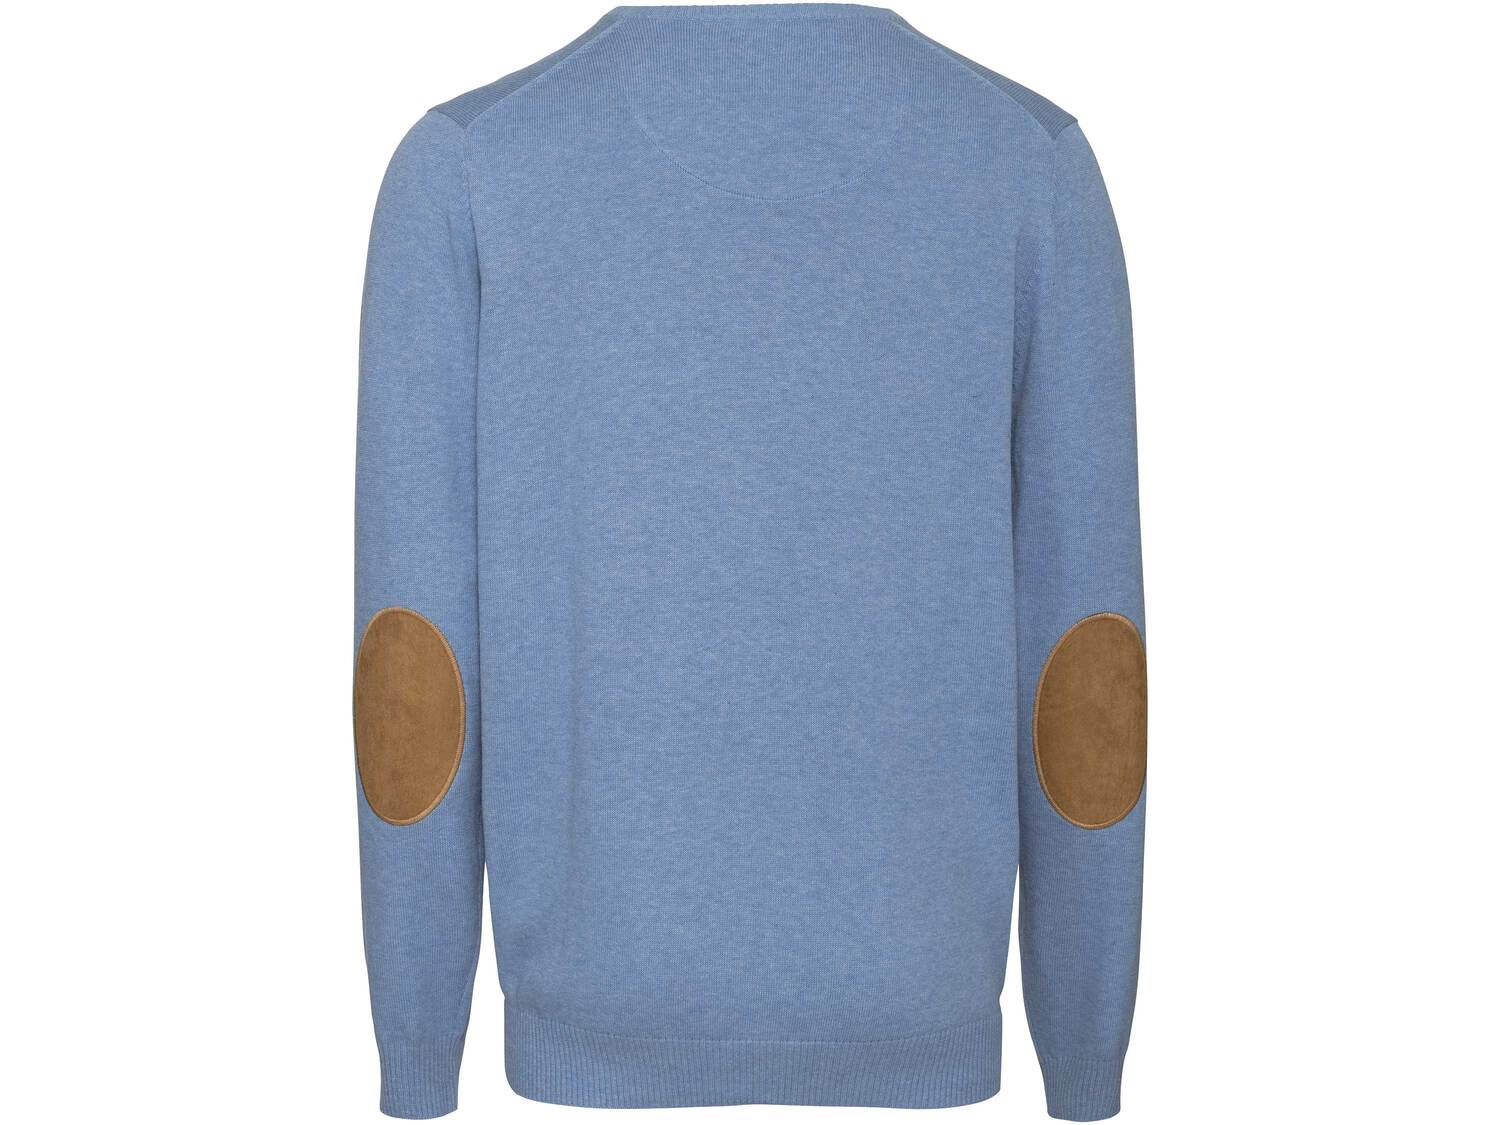 Sweter męski , cena 39,99 PLN 
- 100% bawełny
- rozmiary: M-XL
- dzianina wysokiej ...